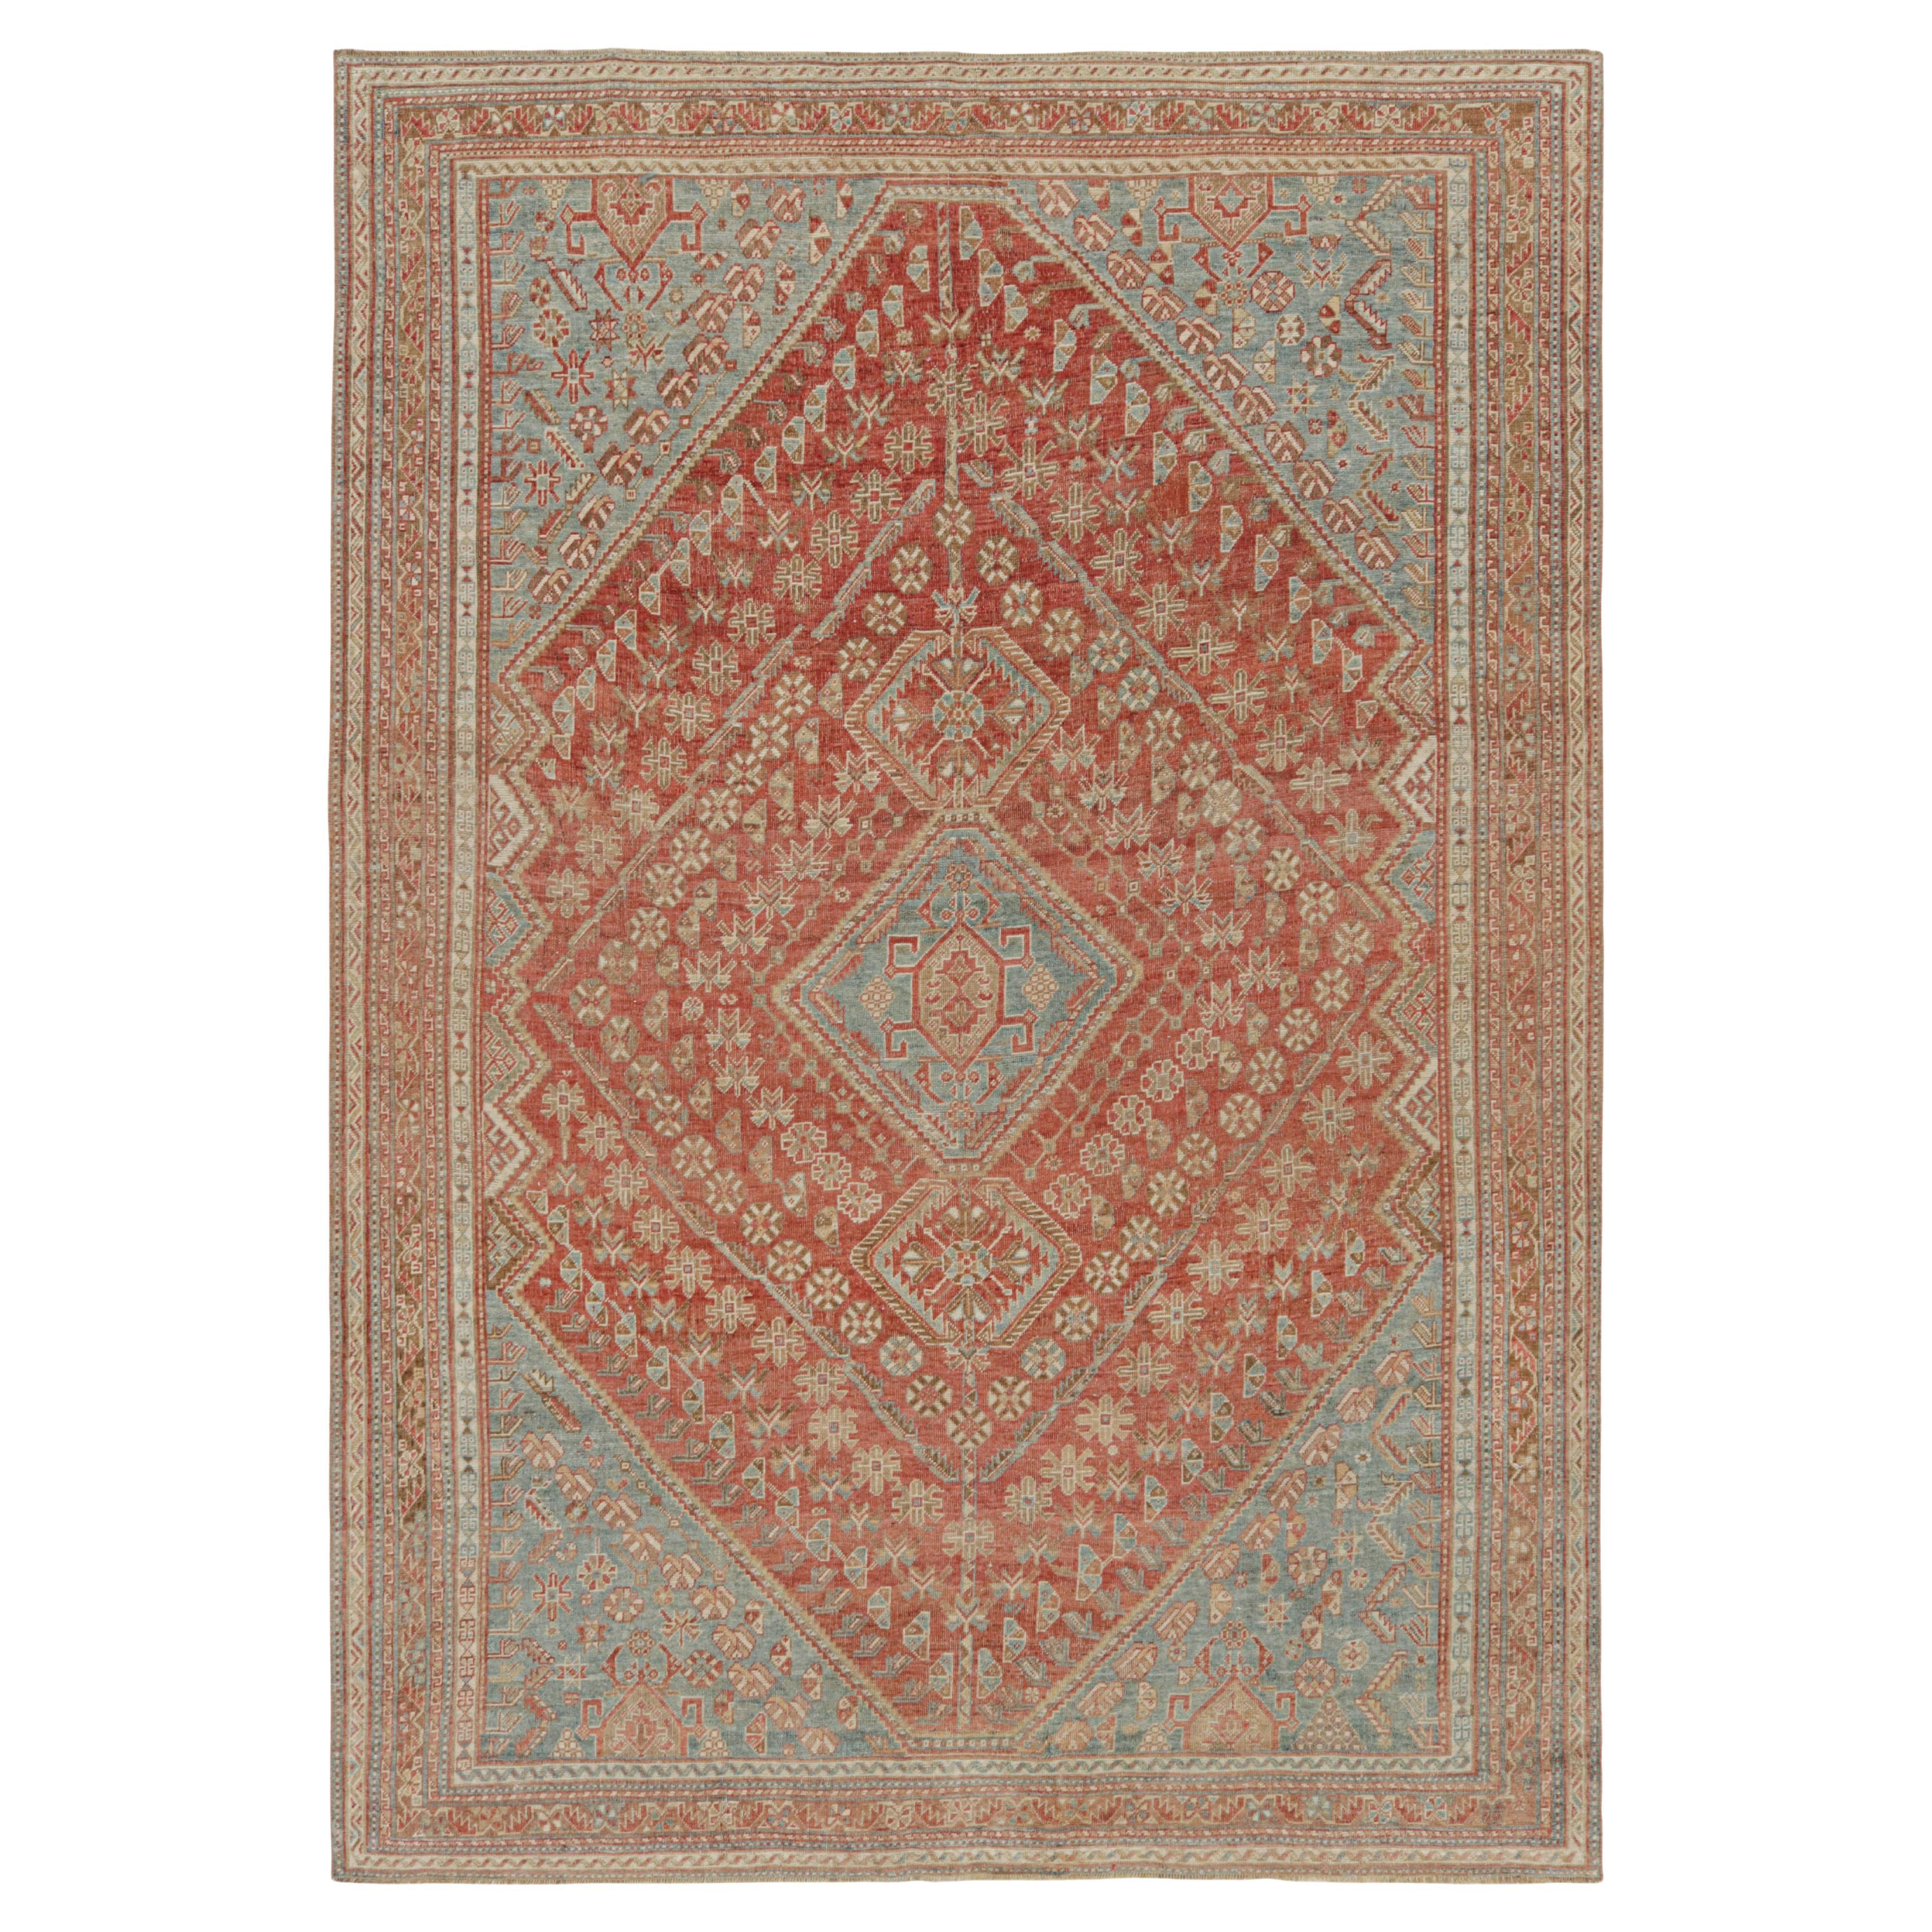 Alter Ersari-Teppich in Rot mit blauen und braun-beigefarbenen Mustern, von Rug & Kilim